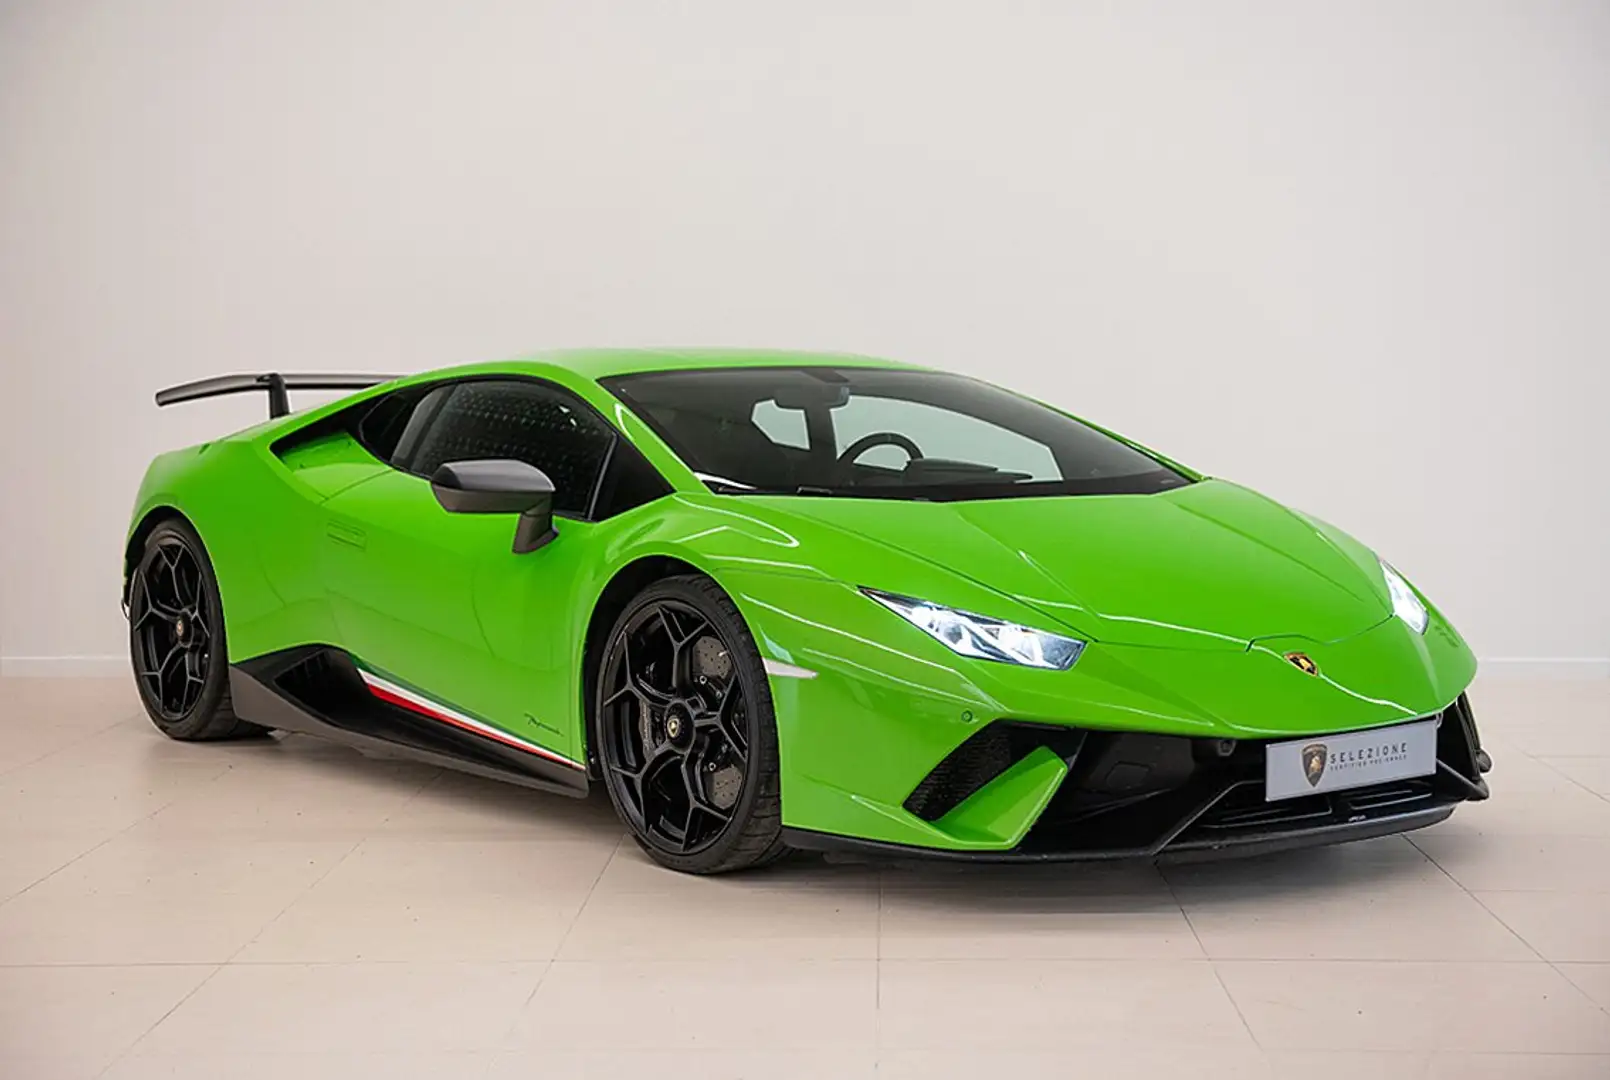 Pracht Sherlock Holmes Maestro Lamborghini Huracan Coupé in Groen tweedehands in Drogenbos voor € 285.000,-